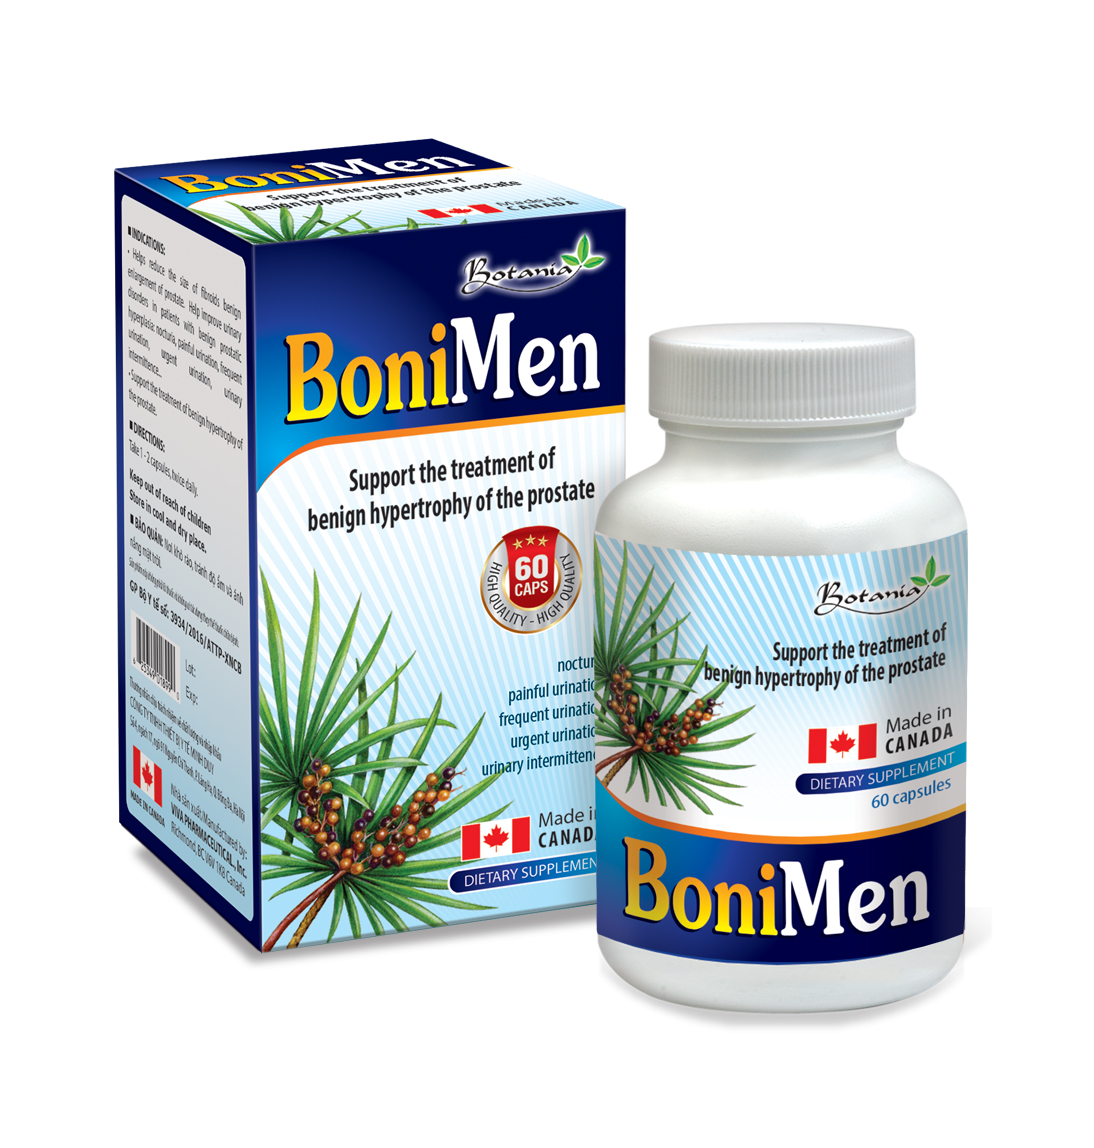 BoniMen - Sản phẩm hoàn hảo dành cho người phì đại tuyến tiền liệt